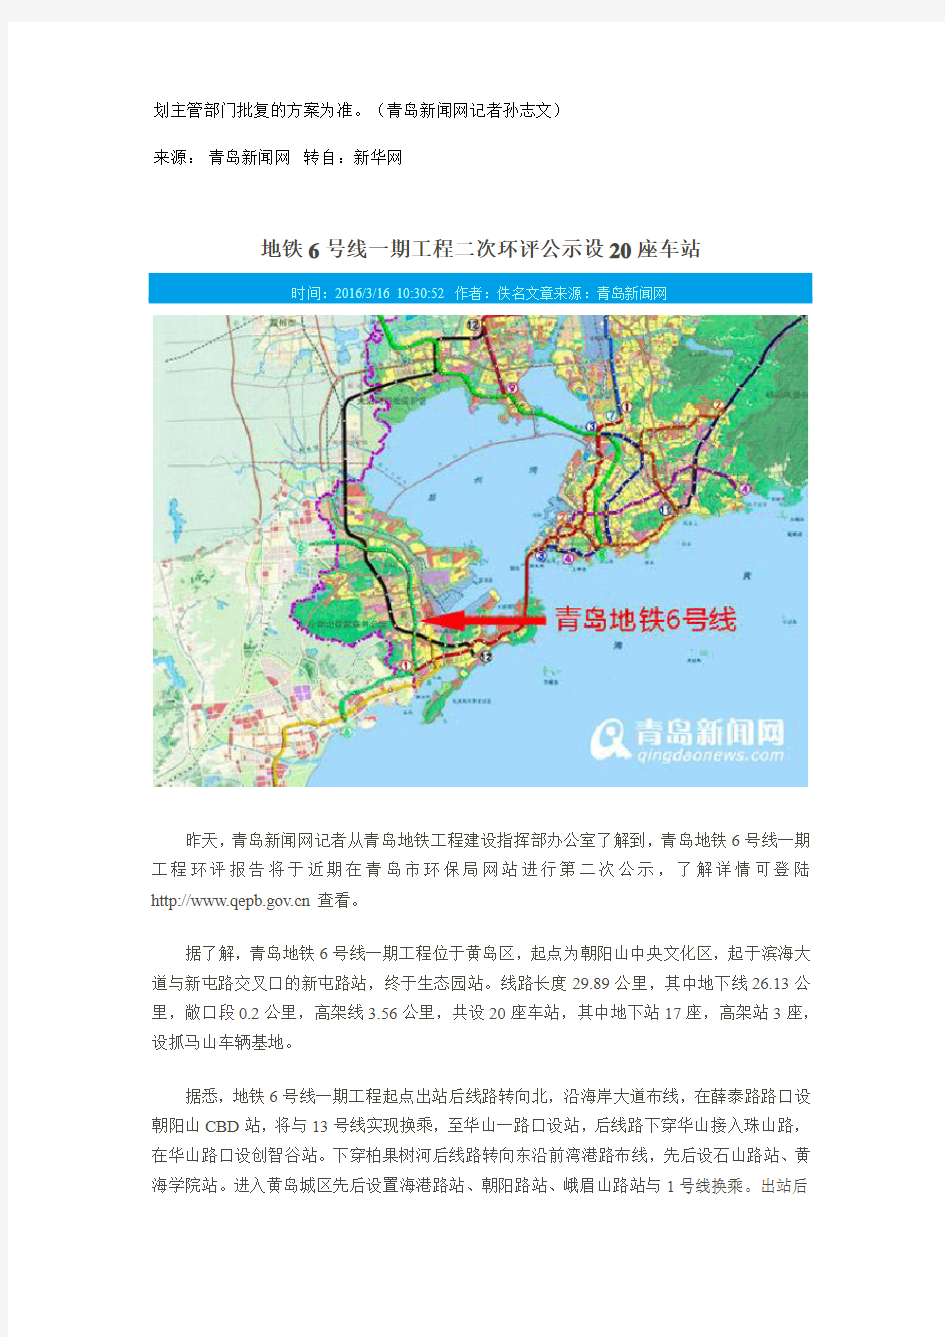 青岛地铁6号线一期工程环评公示 设立20座车站